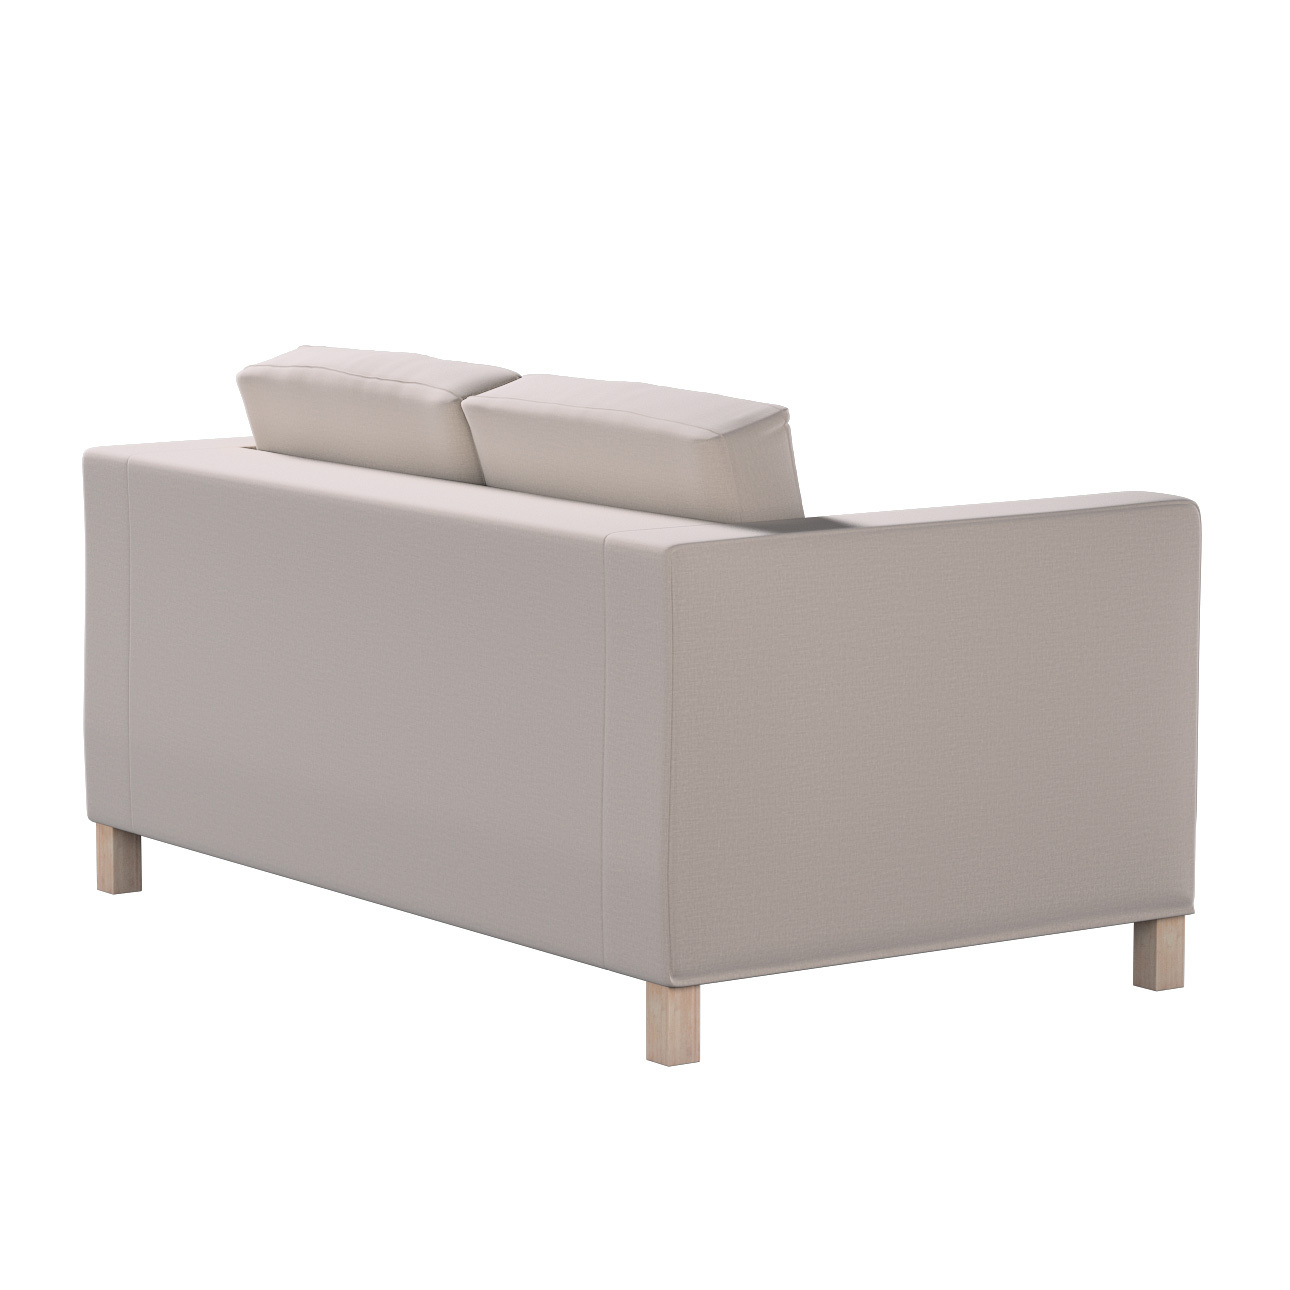 Bezug für Karlanda 2-Sitzer Sofa nicht ausklappbar, kurz, beige, 60cm x 30c günstig online kaufen